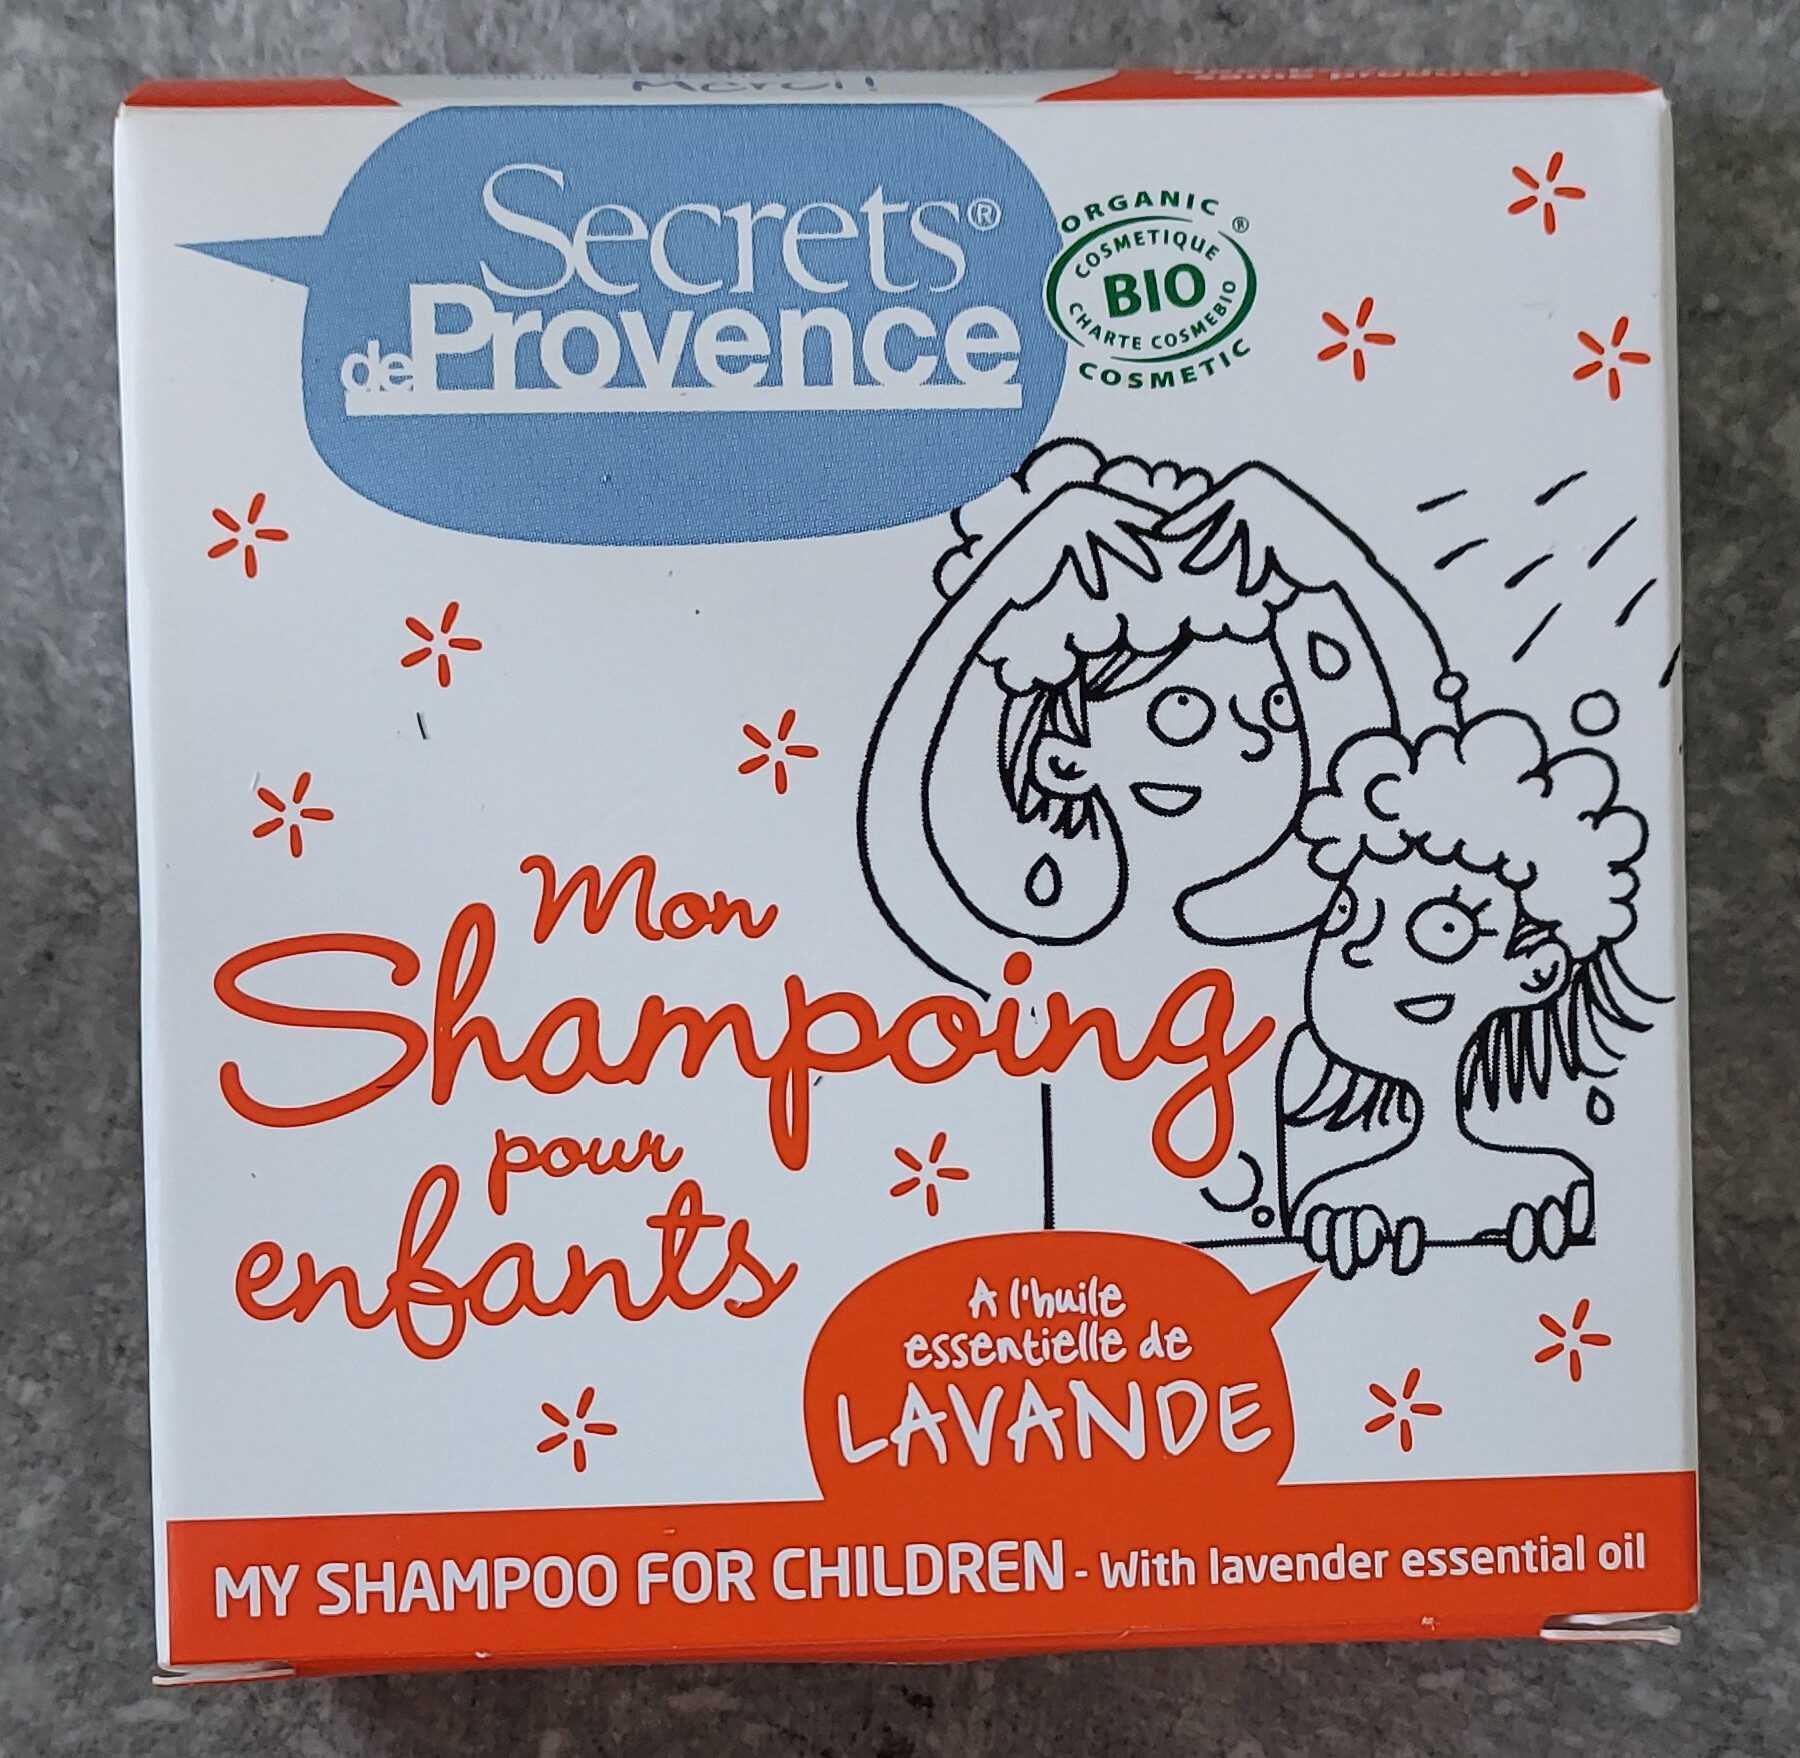 secrets de Provence - Product - fr